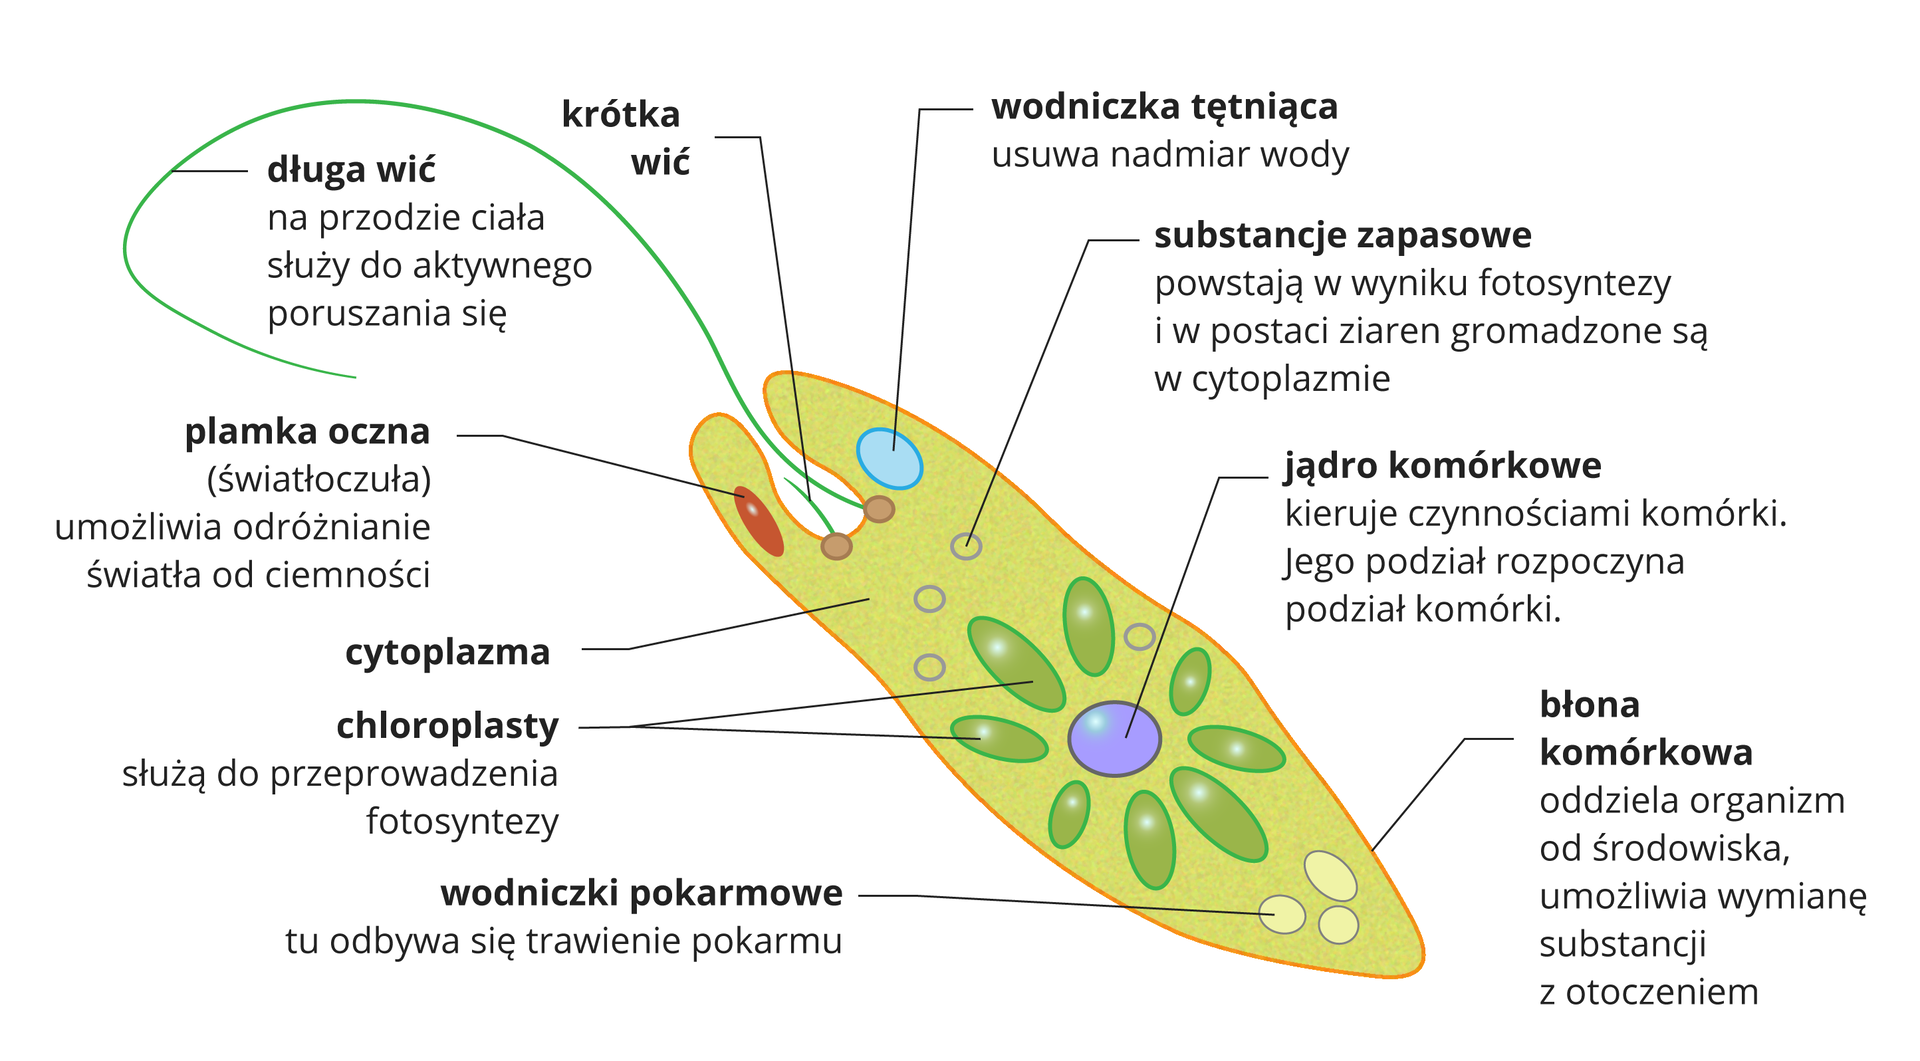 Ilustracja przedstawia żółto zielony, wydłużony kształt z długą wicią u góry, czyli komórkę eugleny. W zagłębieniu u góry obok długiej wici jest krótka wić. Obok po lewej znajduje się czerwona plamka oczna. Po prawej błękitna, okrągła wodniczka tętniąca. Poniżej małe kółeczka w cytoplazmie oznaczają substancje zapasowe. W centrum komórki znajduje się niebieskie jądro komórkowe, promieniście otoczone zielonymi chloroplastami. W dolnym końcu komórki zaznaczono jasne pęcherzyki, czyli wodniczki trawienne.